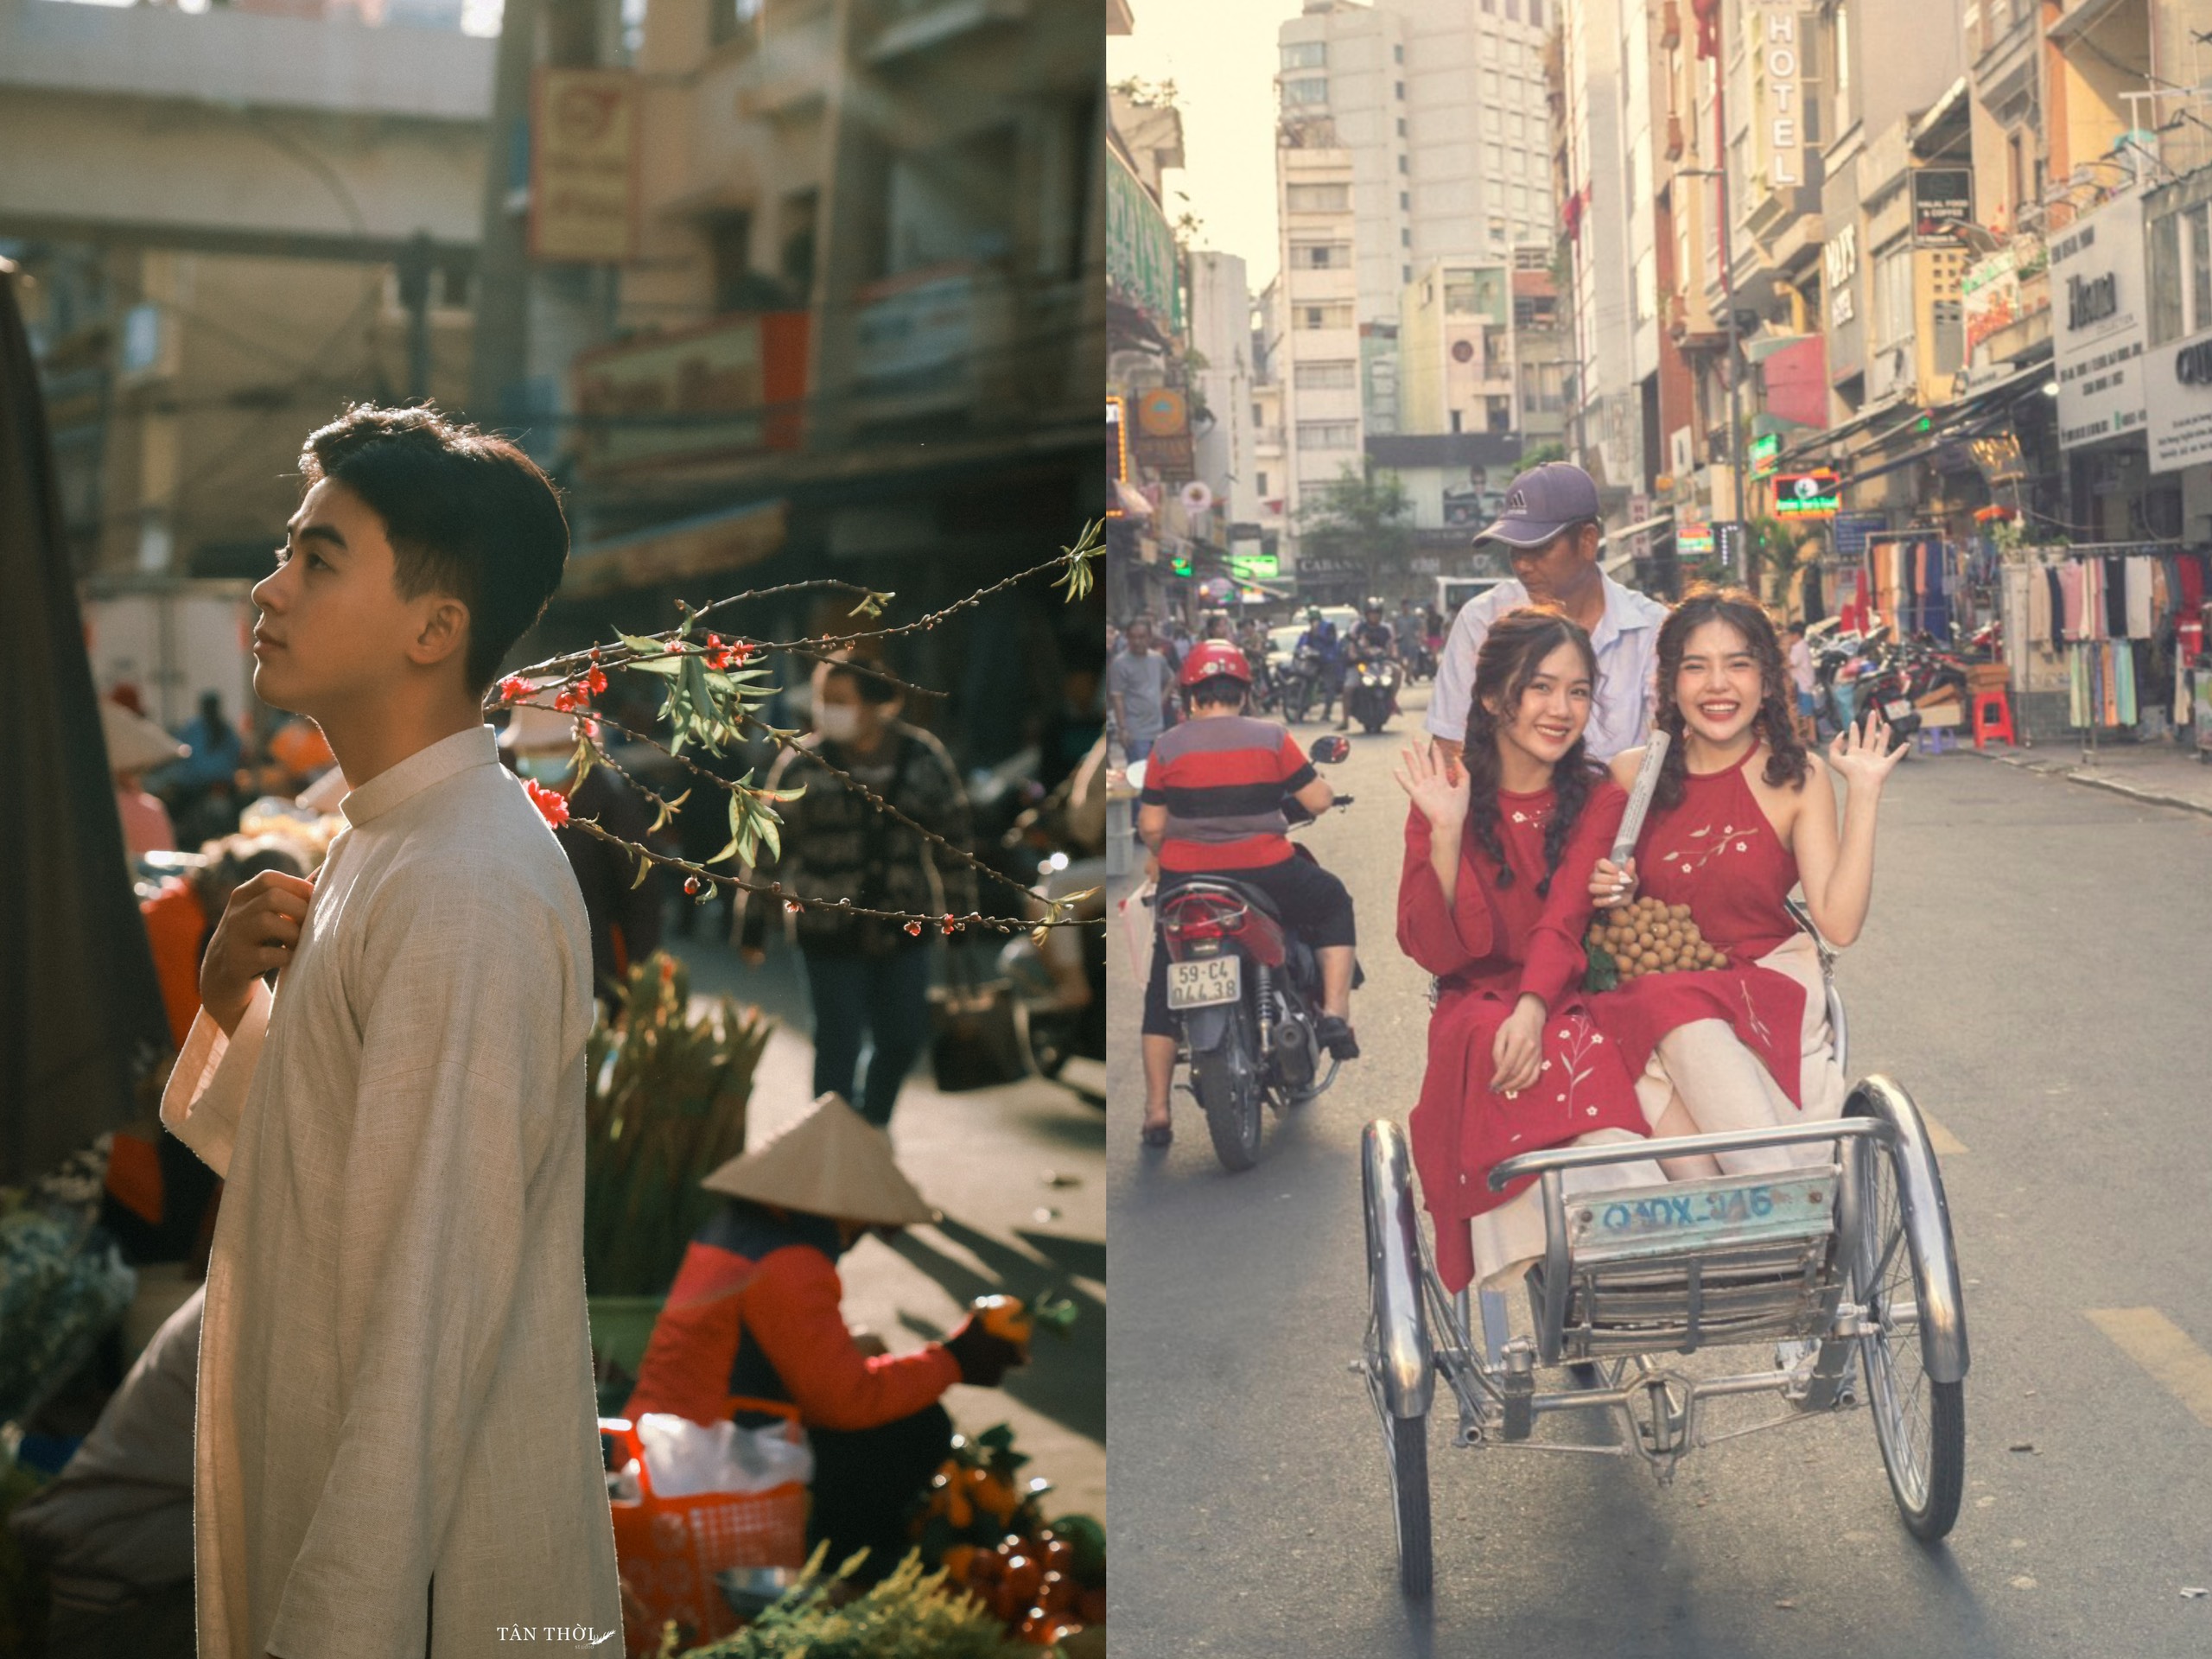 Nếu bạn yêu thích vẻ đẹp đậm chất retro và muốn tìm hiểu thời kỳ thập niên 90 của Việt Nam, hãy xem bức ảnh được chụp trong thời kỳ đó. Hinh ảnh sẽ đưa bạn trở lại thời đại với những trang phục, kiểu tóc và phong cách sống độc đáo.